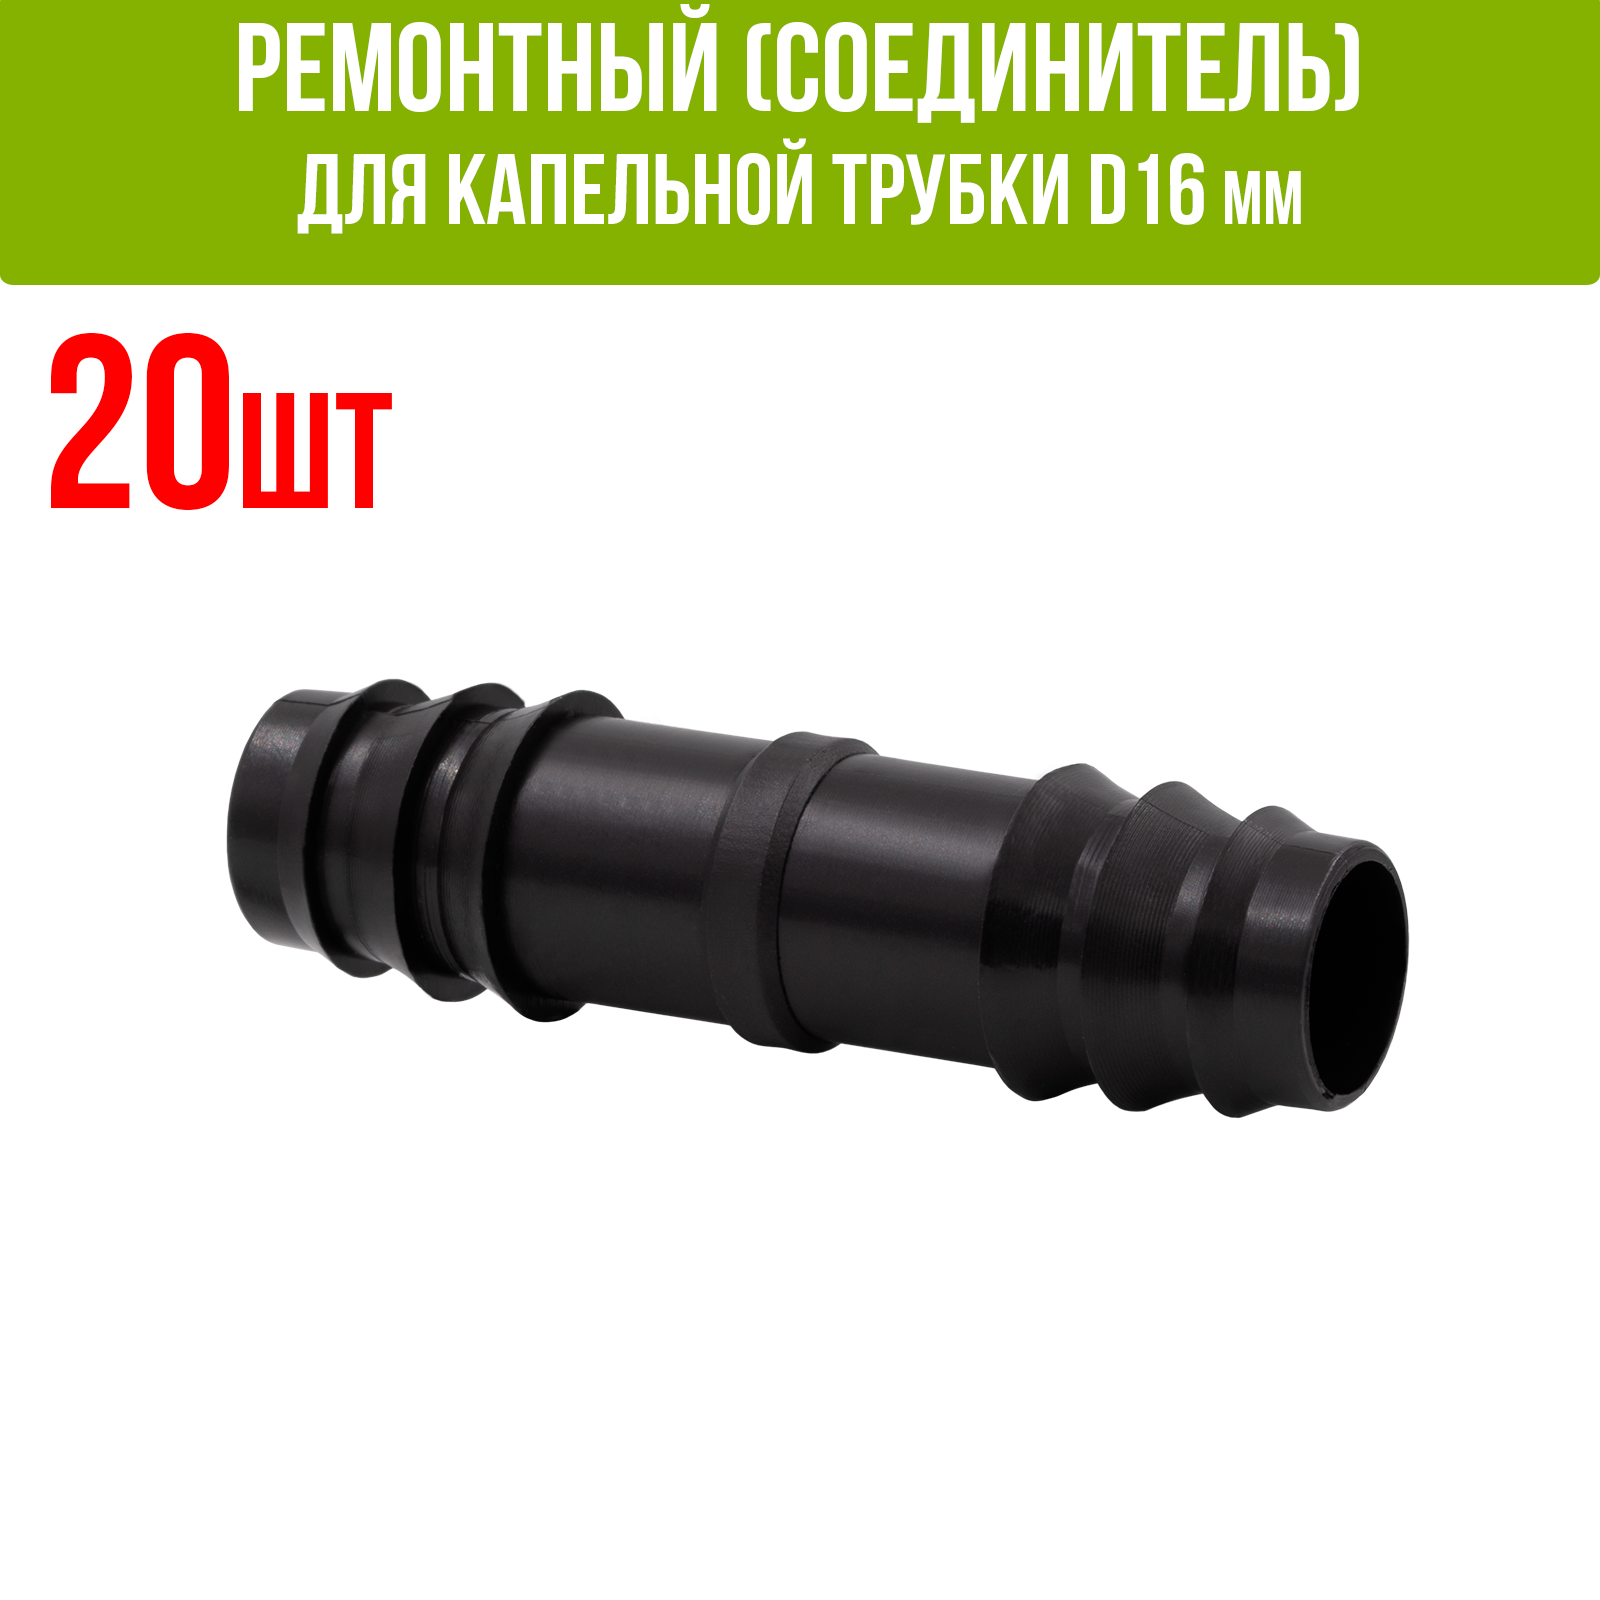 Ремонтный(соединитель) для капельной трубки D16 мм (50шт)